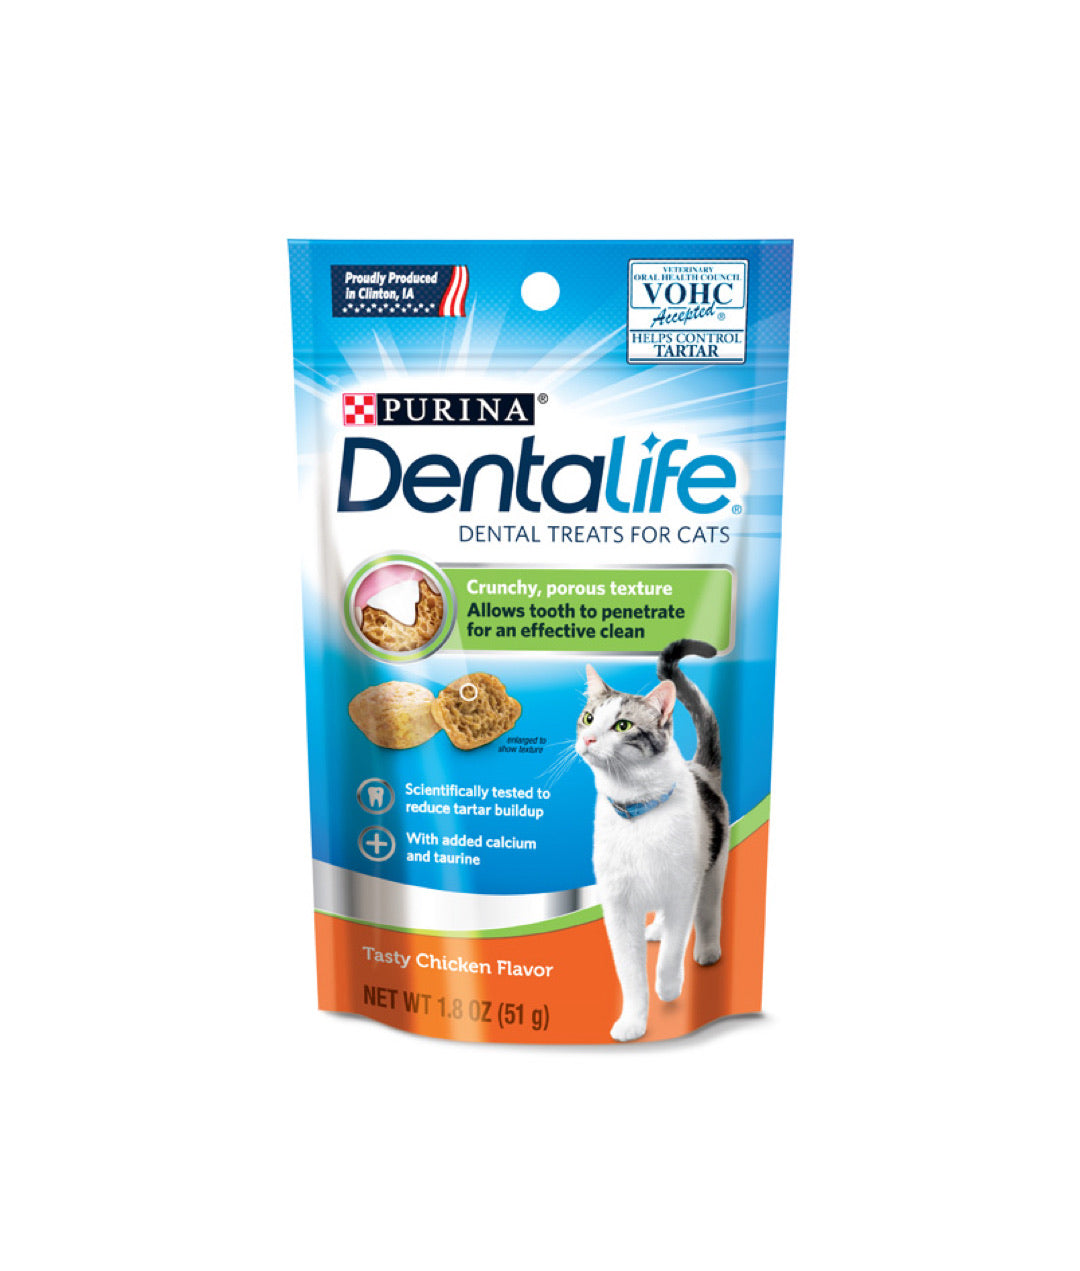 Dentalife Tasty Chicken Flavor Dental Treats For Cats (51g)